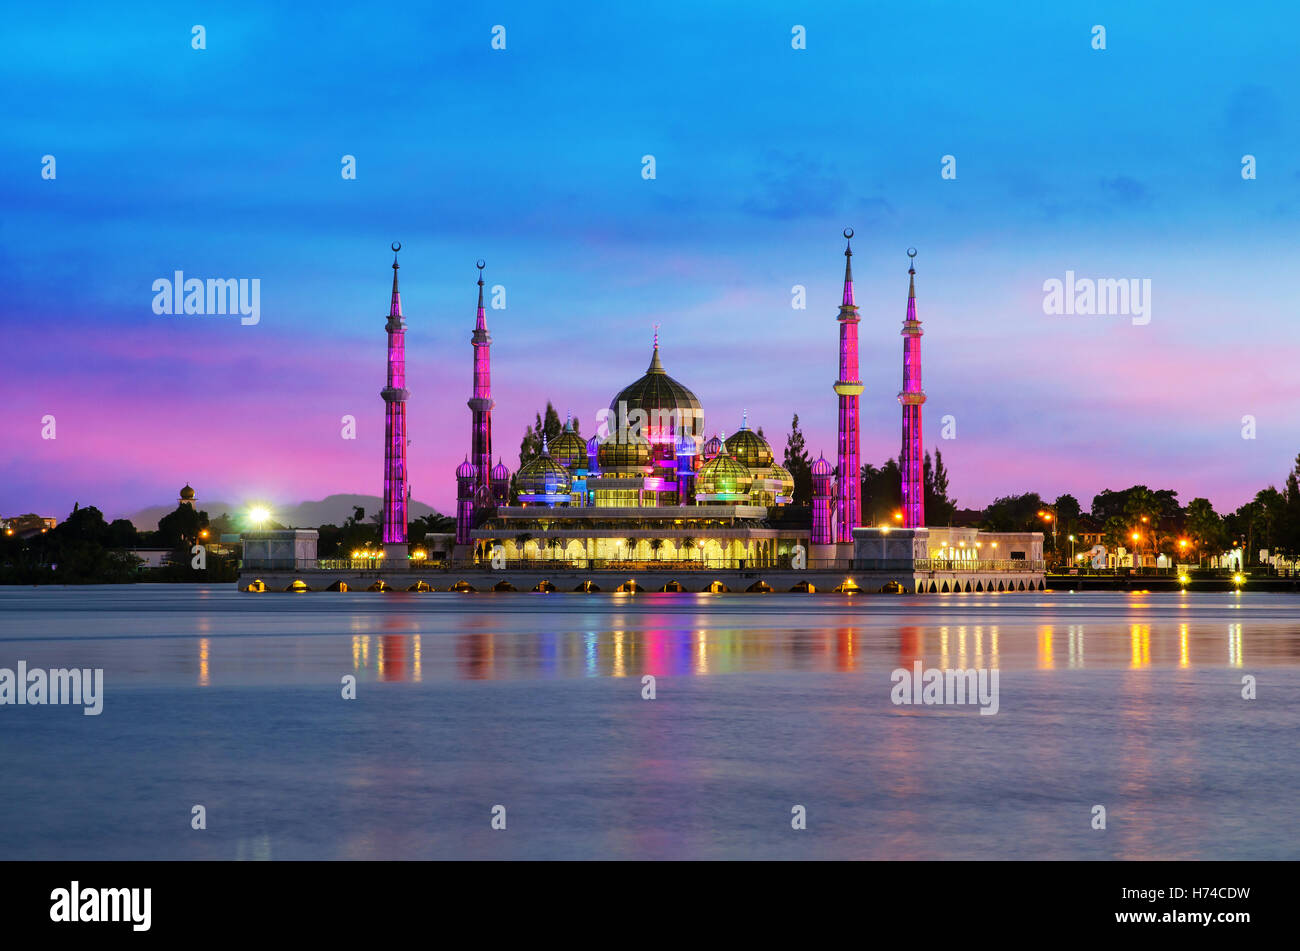 Vue de nuit sur la mosquée de cristal à Kuala Terengganu, Malaisie. Mosquée de cristal est belle mosquée en Malaisie. Banque D'Images